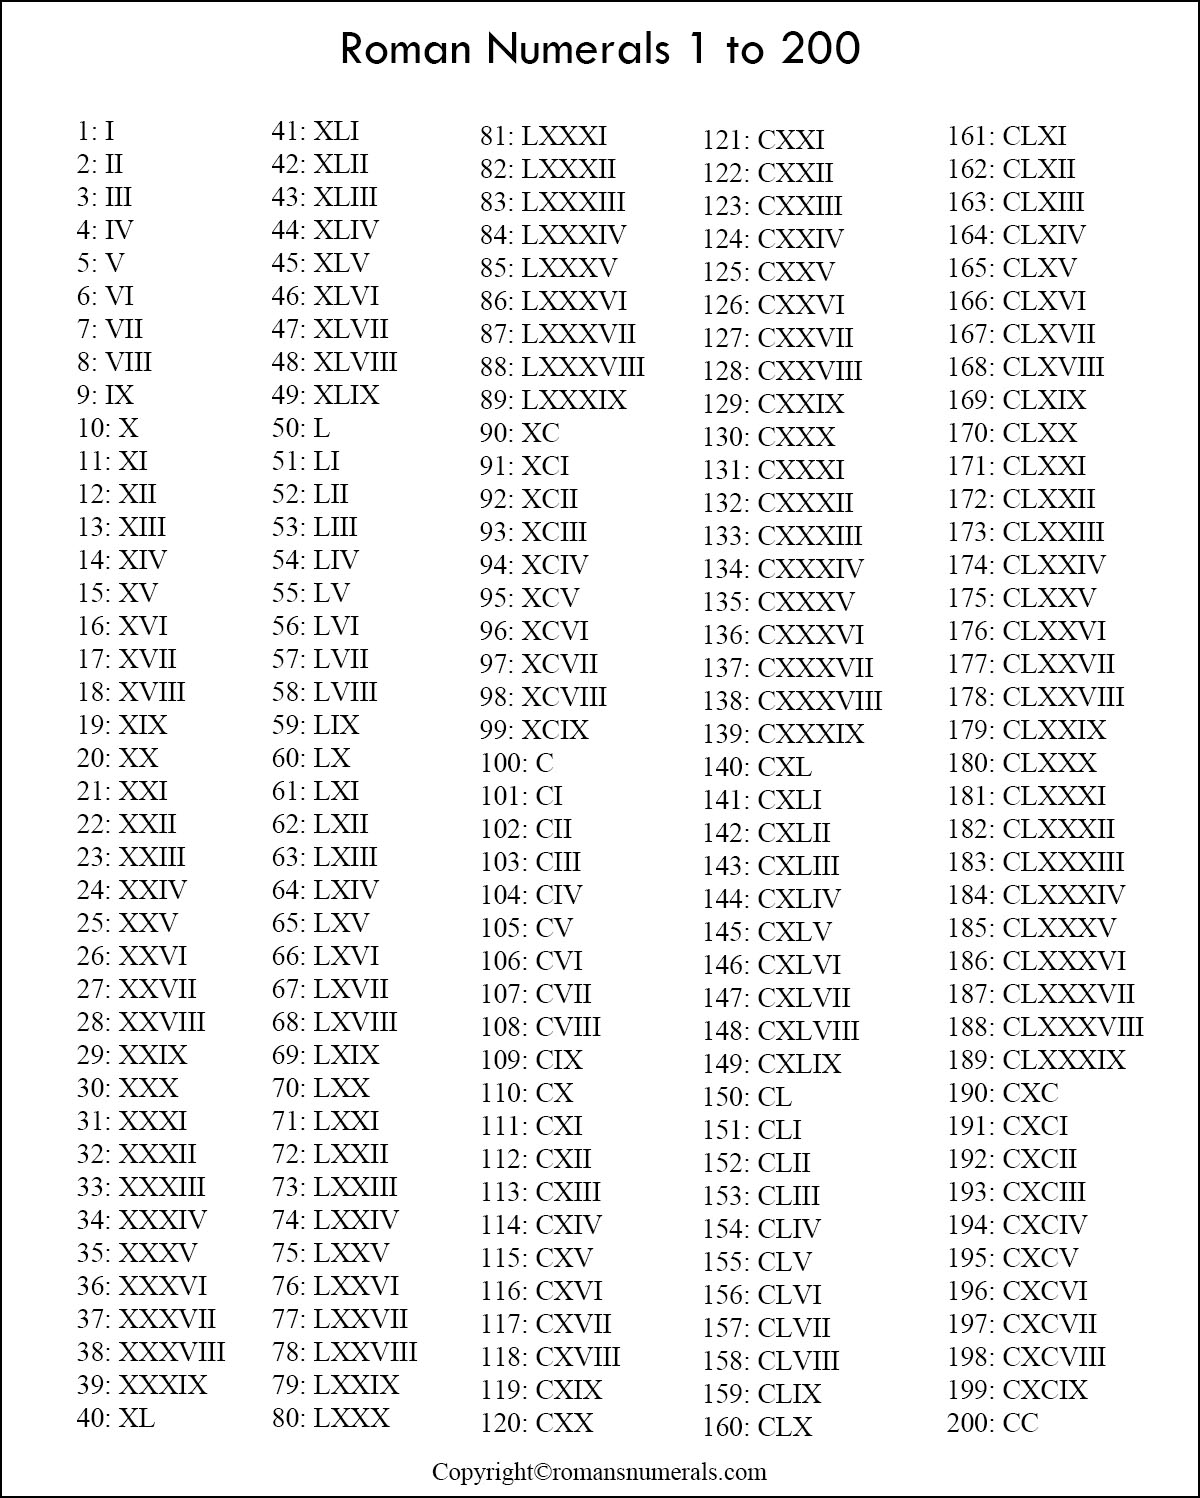 Printable Roman Numerals 1 to 200 | Roman Numerals Pro